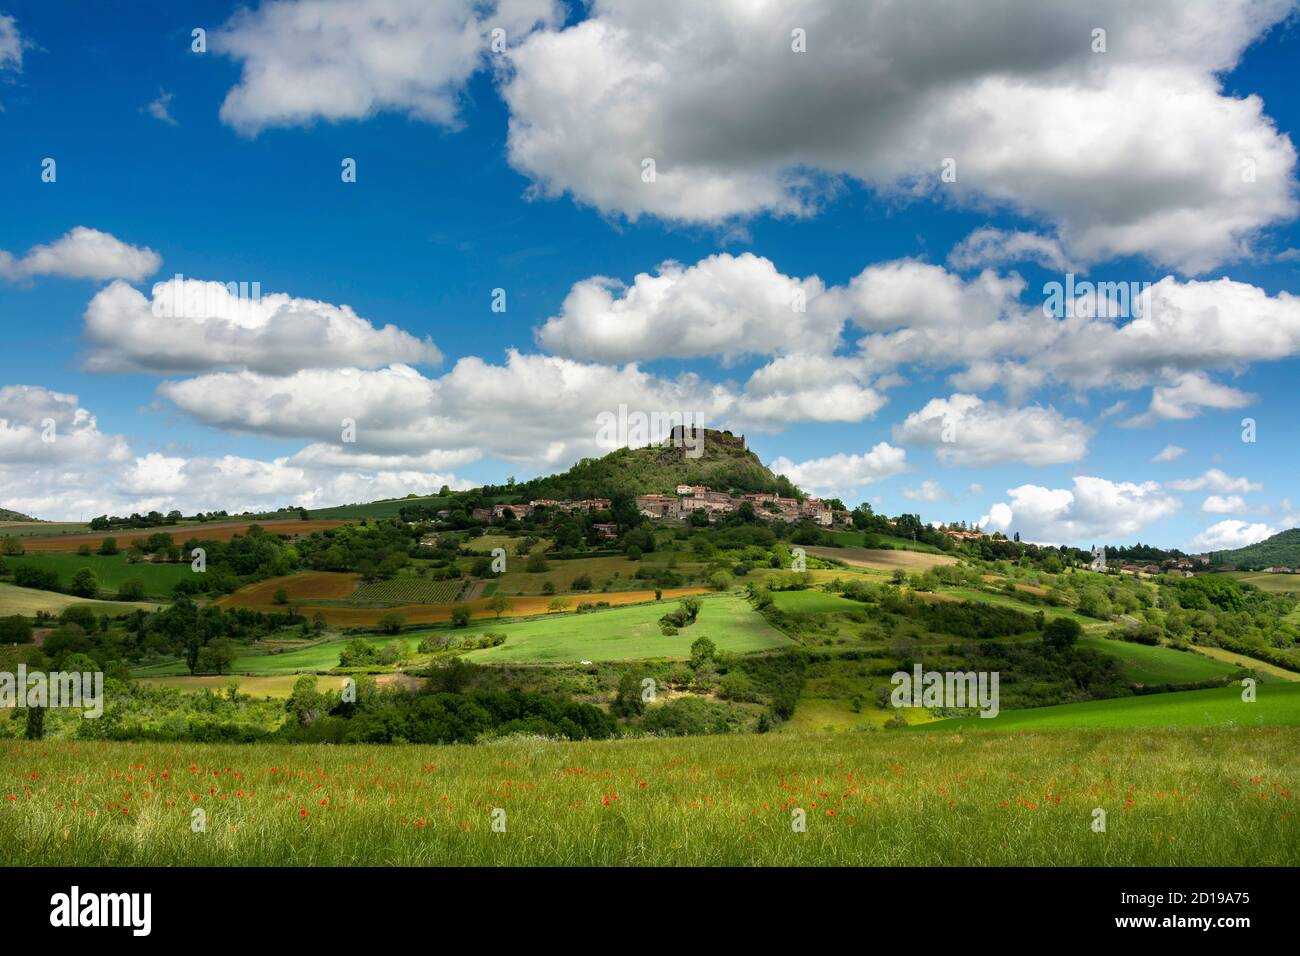 Die mittelalterliche Burg und das Dorf Buron, Puy de Dome Abteilung, Auvergne Rhone Alpes, Frankreich Stockfoto